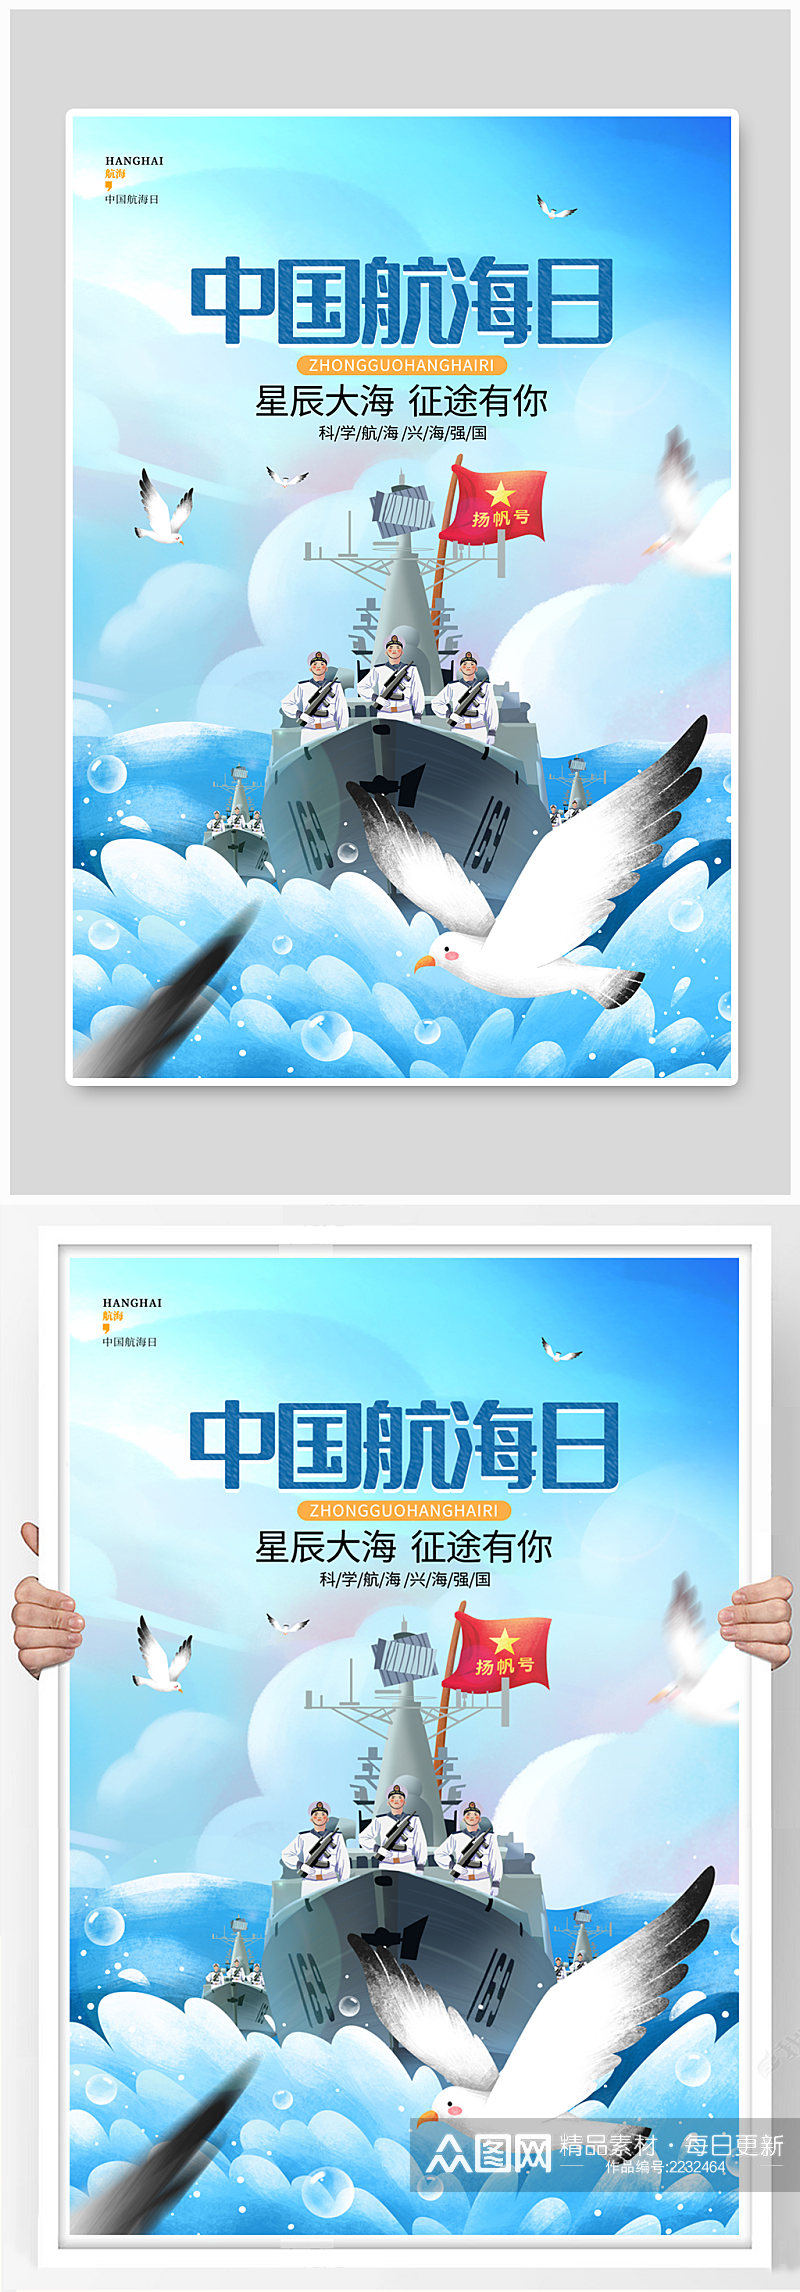 简约中国航海日节日宣传海报素材